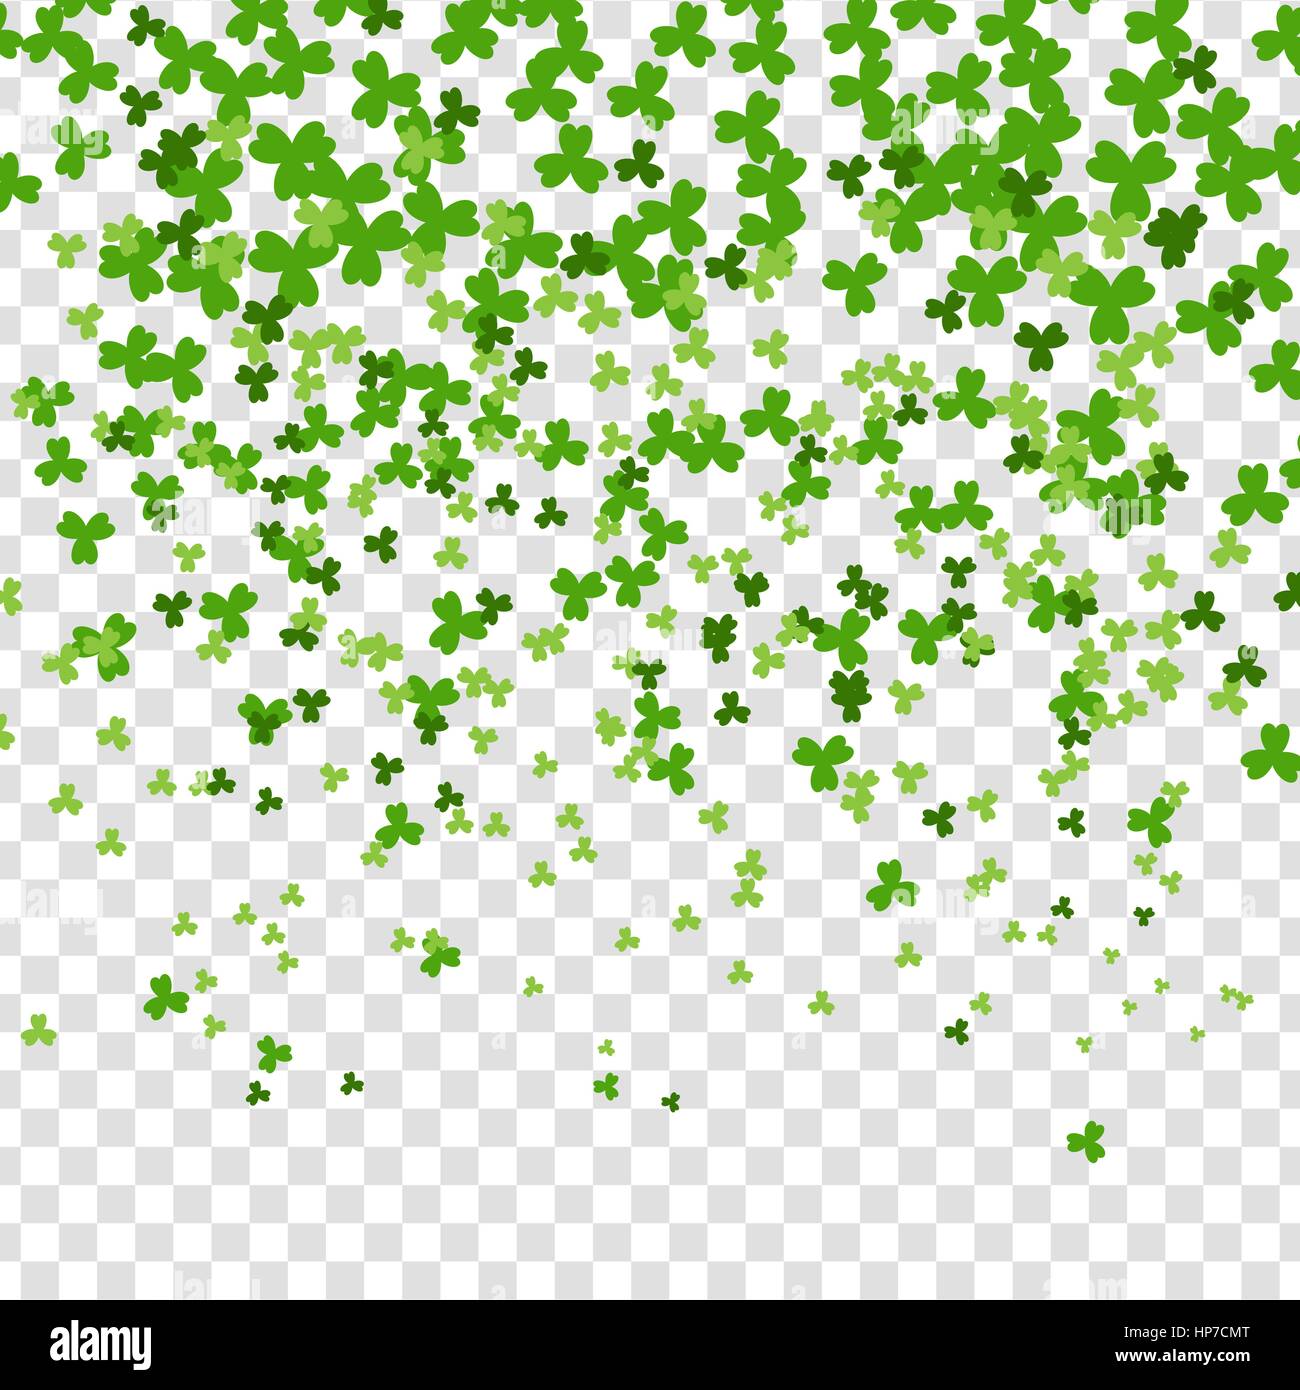 Vektor-Illustration. Gruß glücklich St. Patricks Day. Grünen Klee zufällig fallen auf transparentem Hintergrund. Irische Zeichen und Symbol des Glücks. Stock Vektor